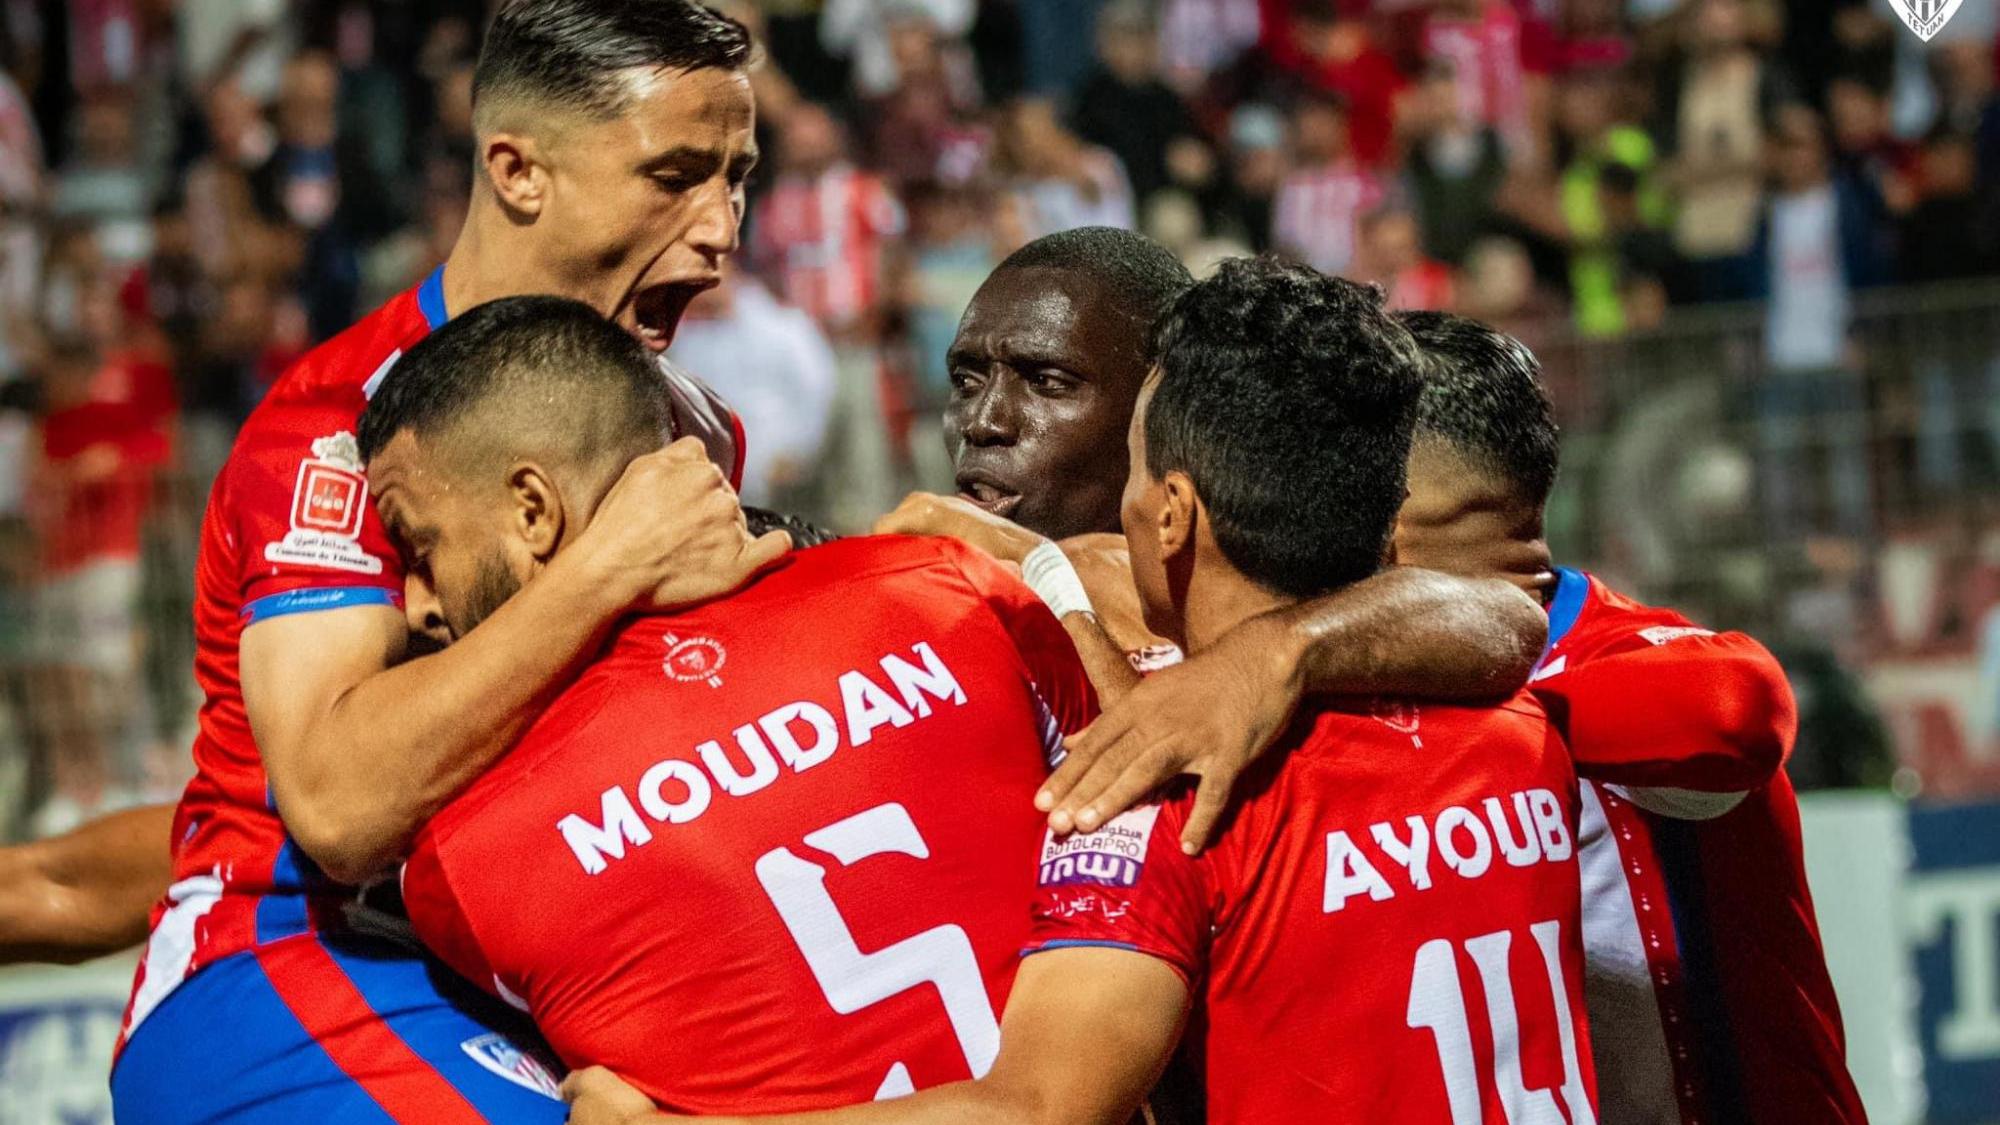 المغرب التطواني يقسو على سطاد المغربي برباعية ويتأهل لثمن نهائي كأس العرش